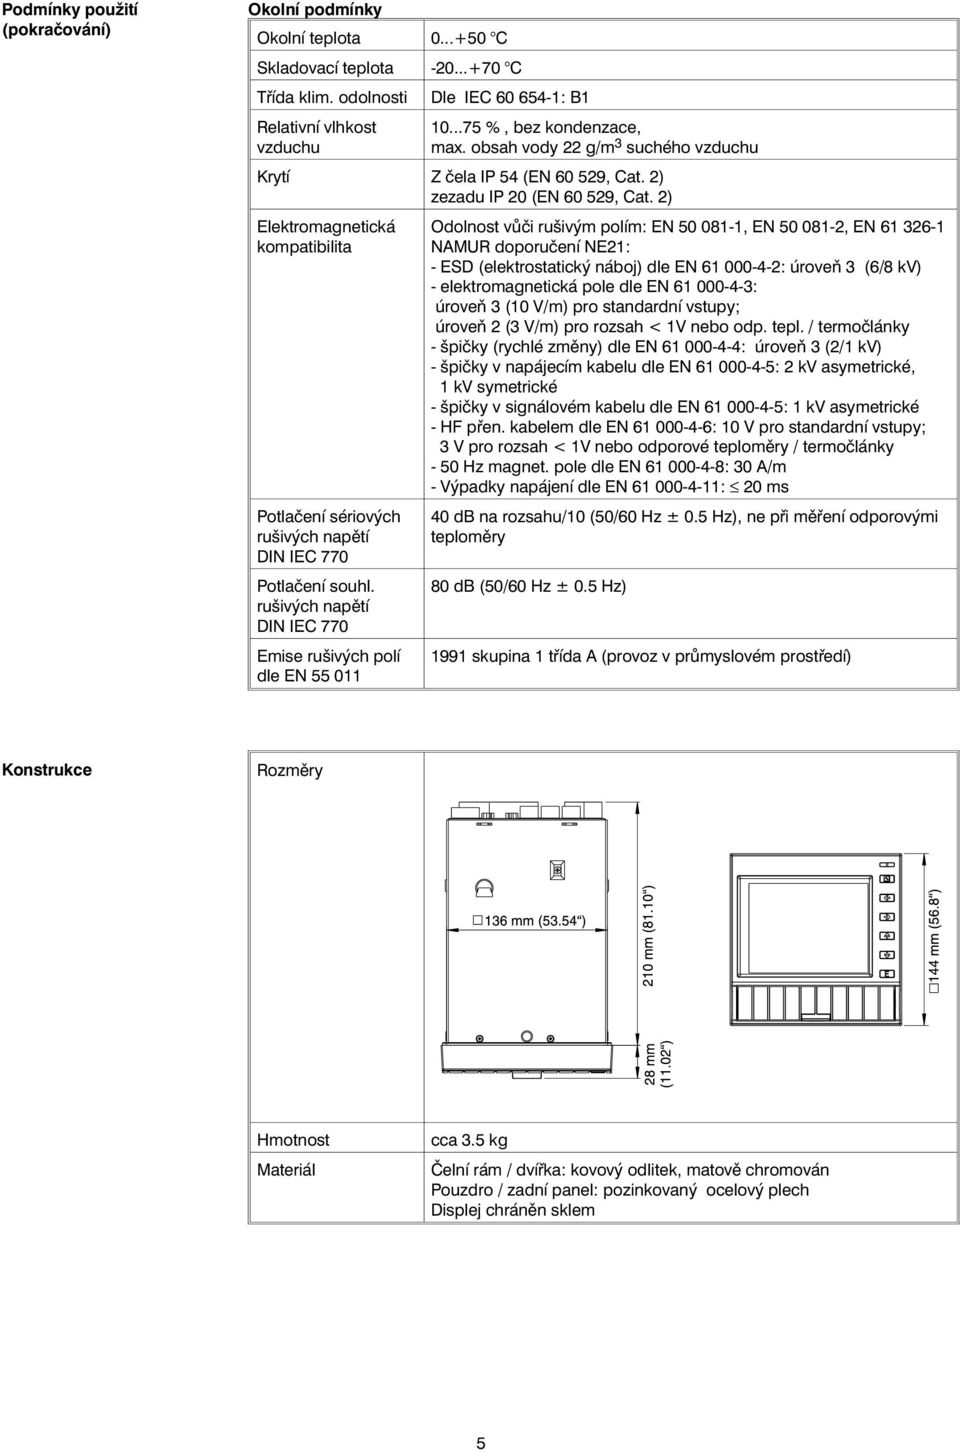 2) Elektromagnetická kompatibilita Potlačení sériových rušivých napětí DIN IEC 770 Potlačení souhl.